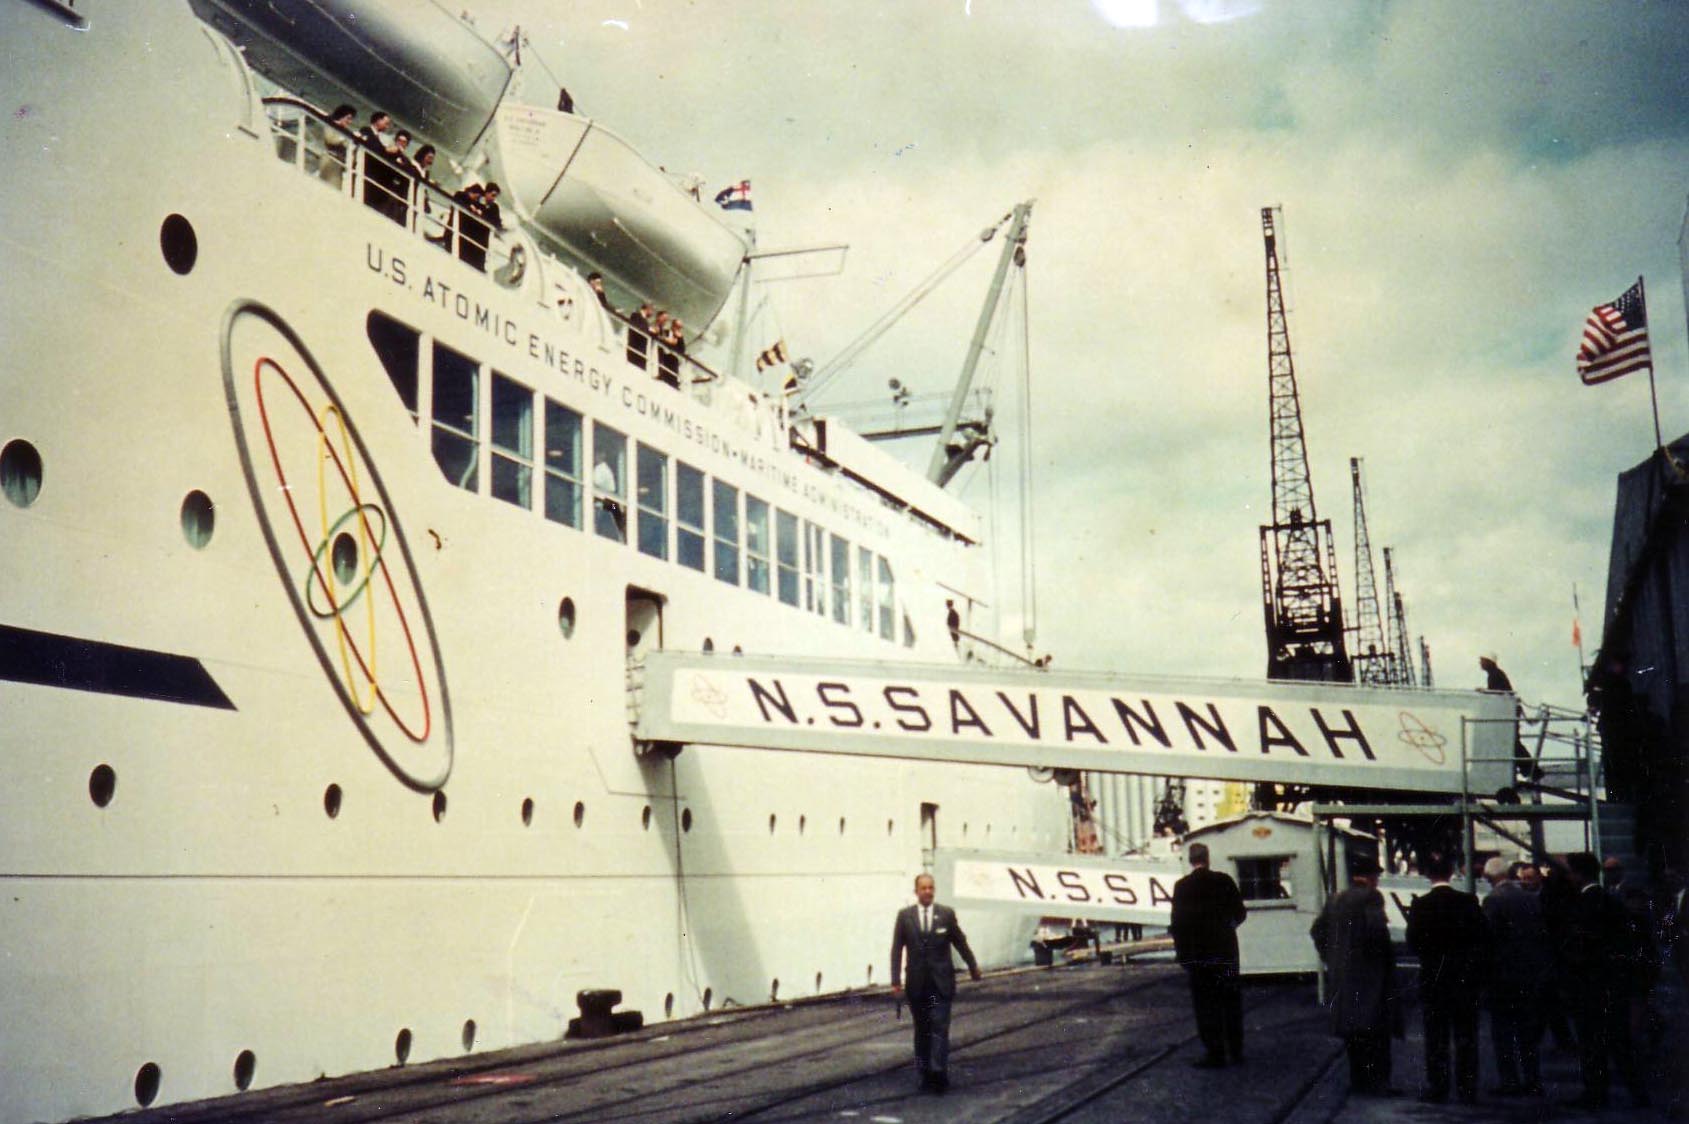 A photo of nuclear ship NS Savannah